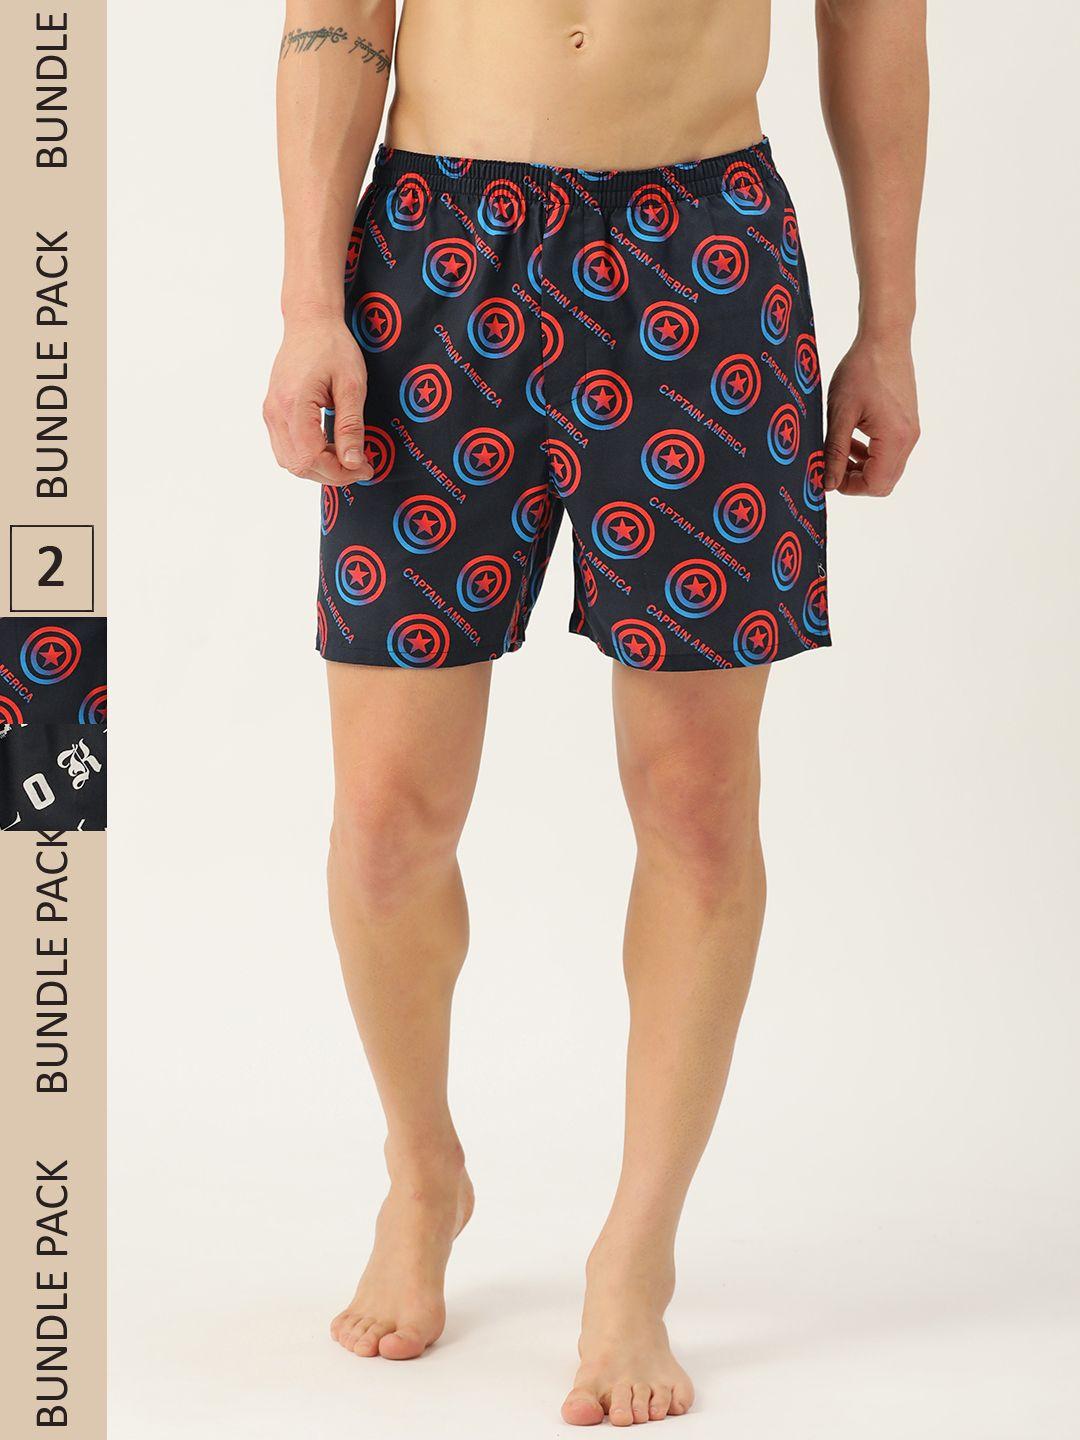 kook-n-keech-men-pack-of-2-printed-shorts